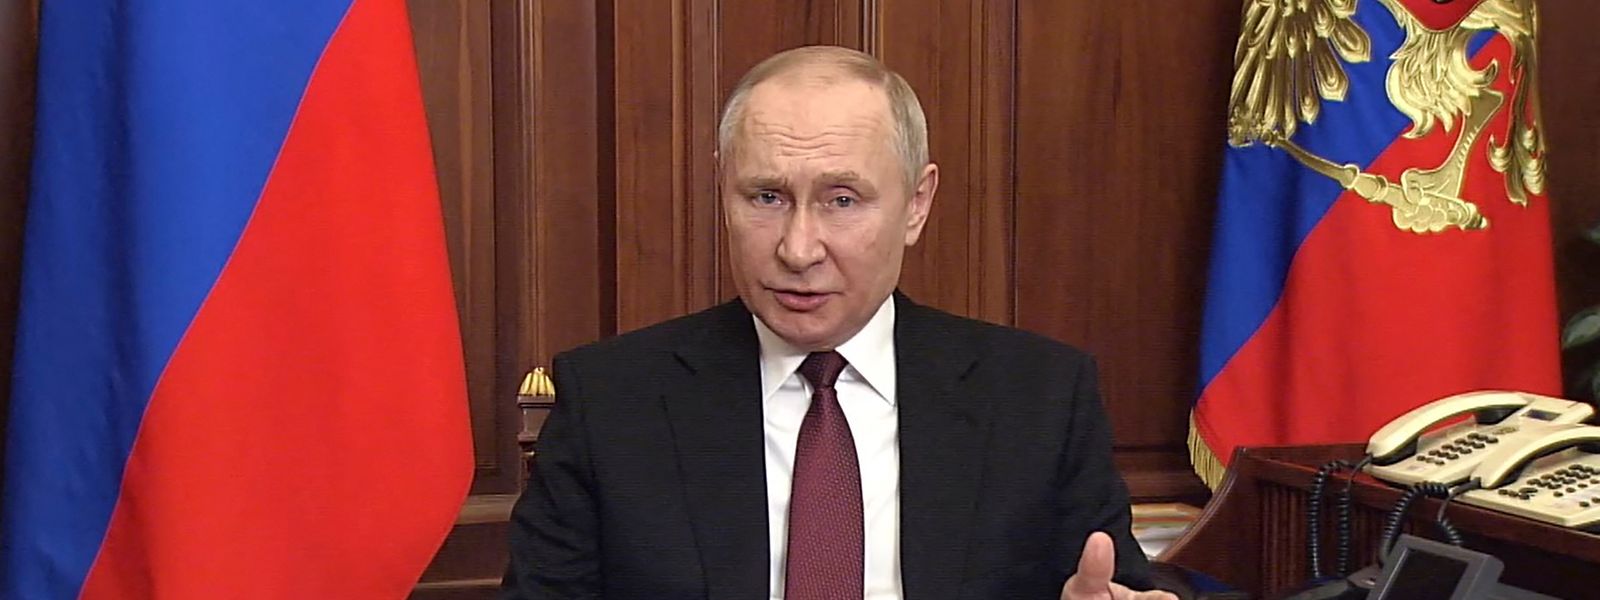 Putin gab am Donnerstagmorgen seine Entscheidung bekannt, die Ukraine anzugreifen.  